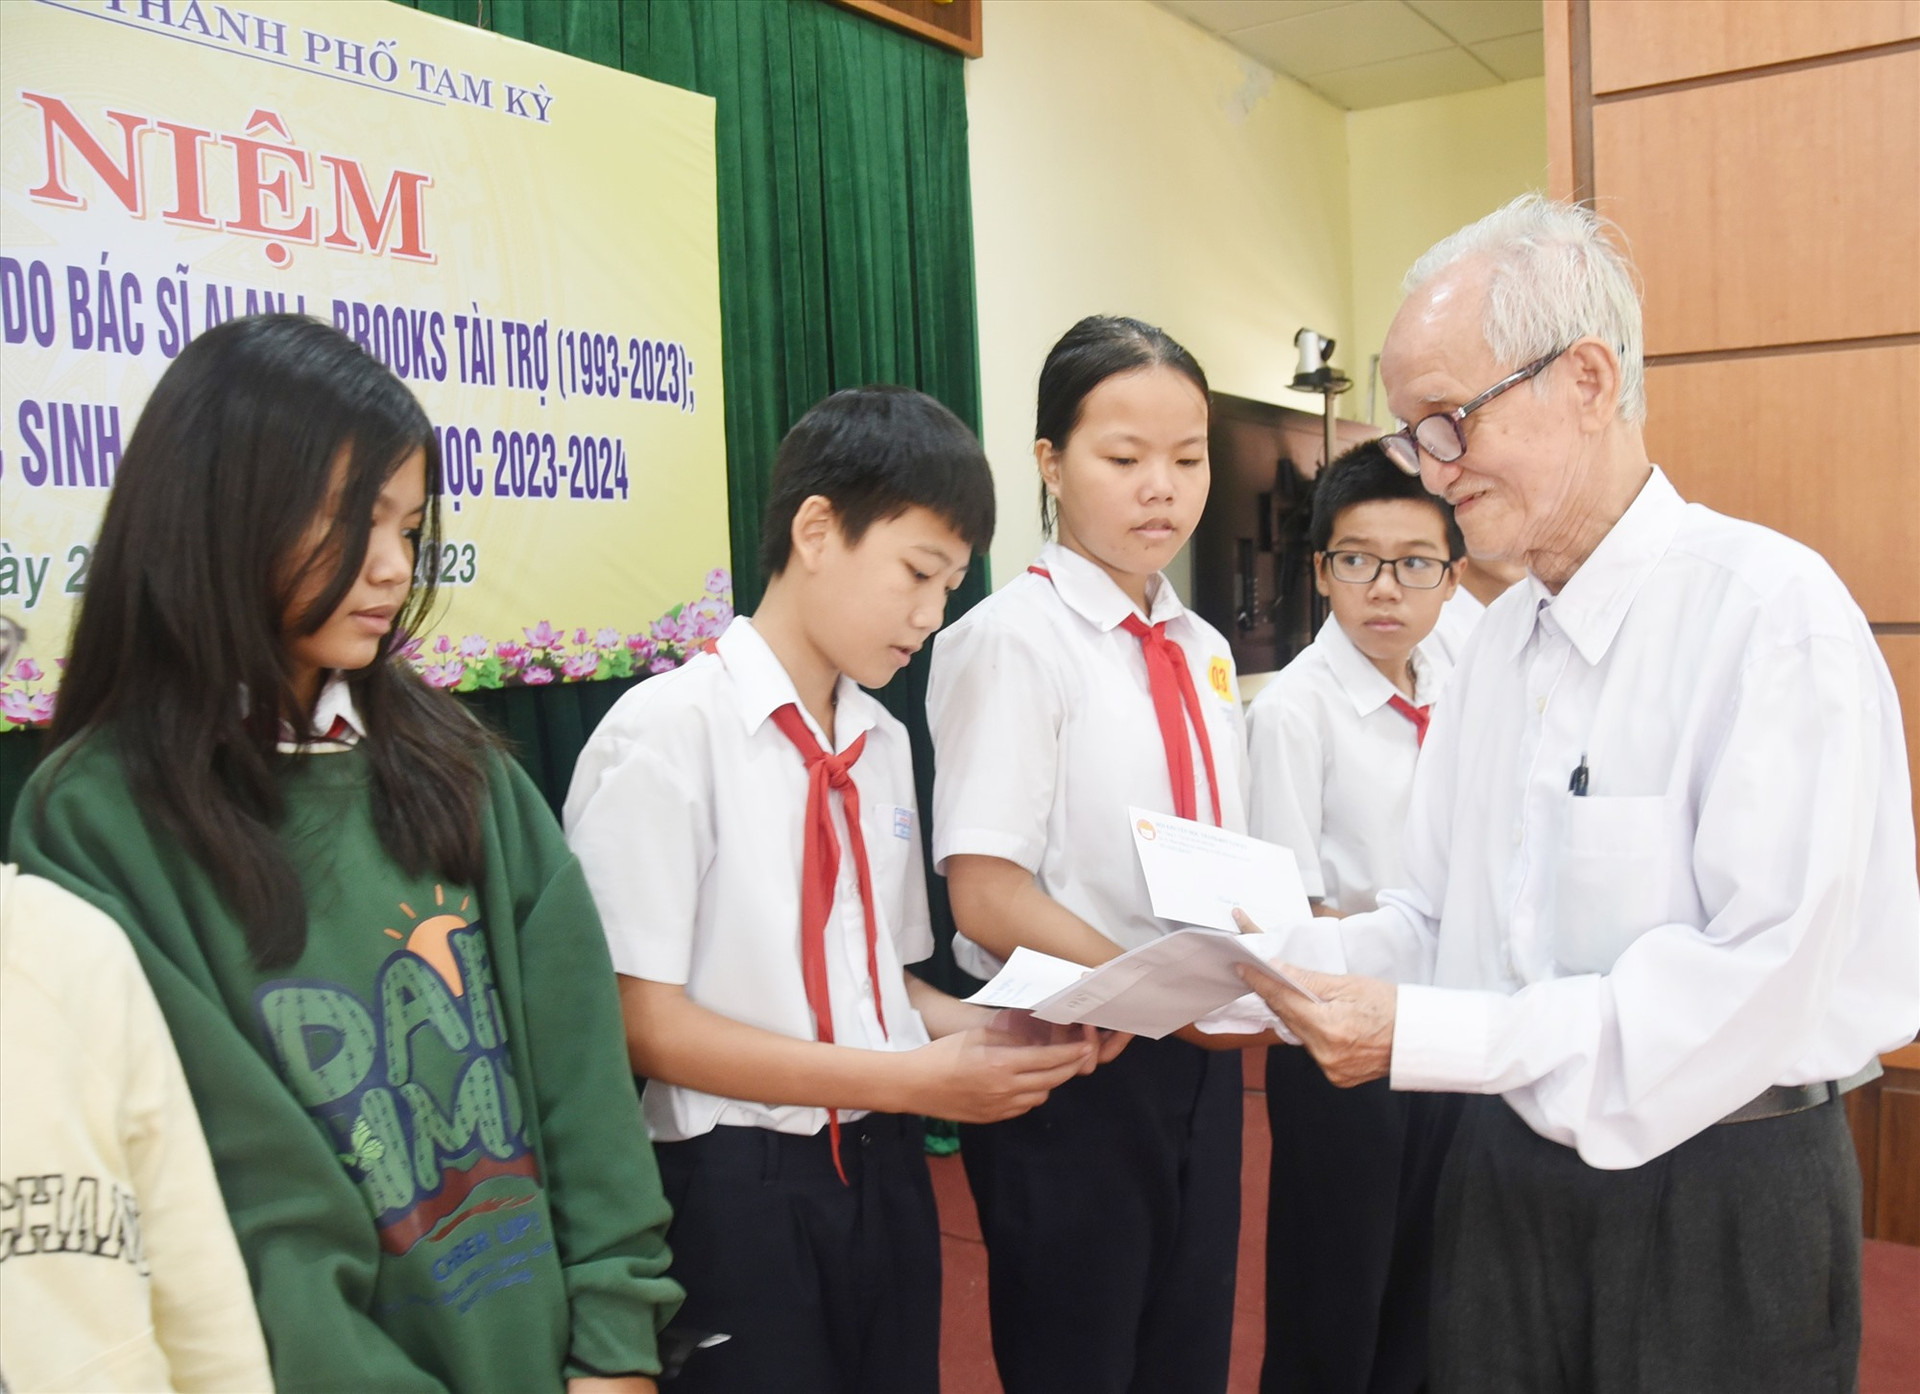 Thầy giáo Huỳnh Văn Luận thay mặt bác sĩ Alan L. Brooks trao học bổng cho học sinh Tam Kỳ năm 2023. Ảnh: X.P